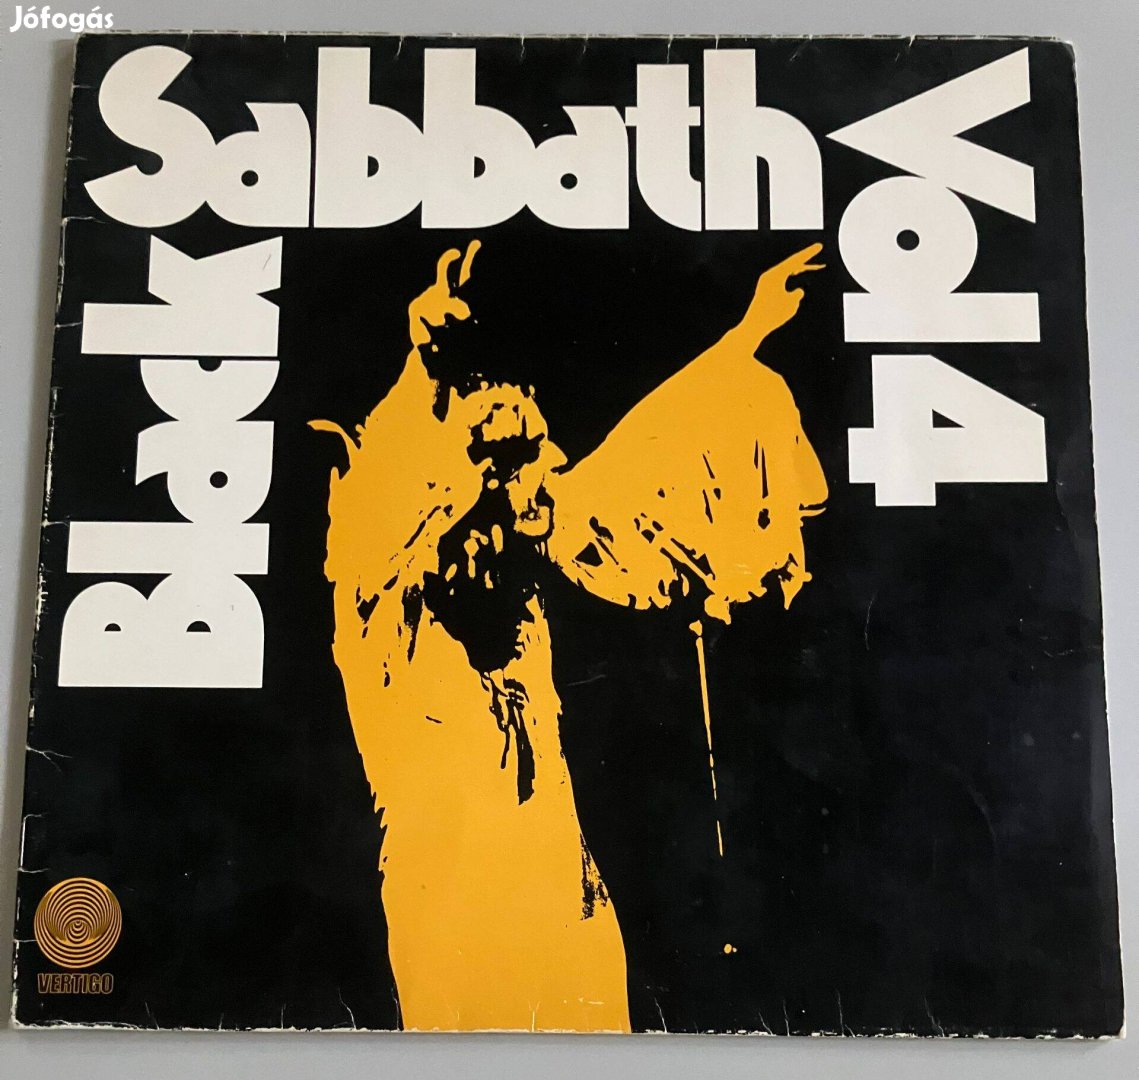 Black Sabbath - Vol. 4 (német, Vertigo + insert)